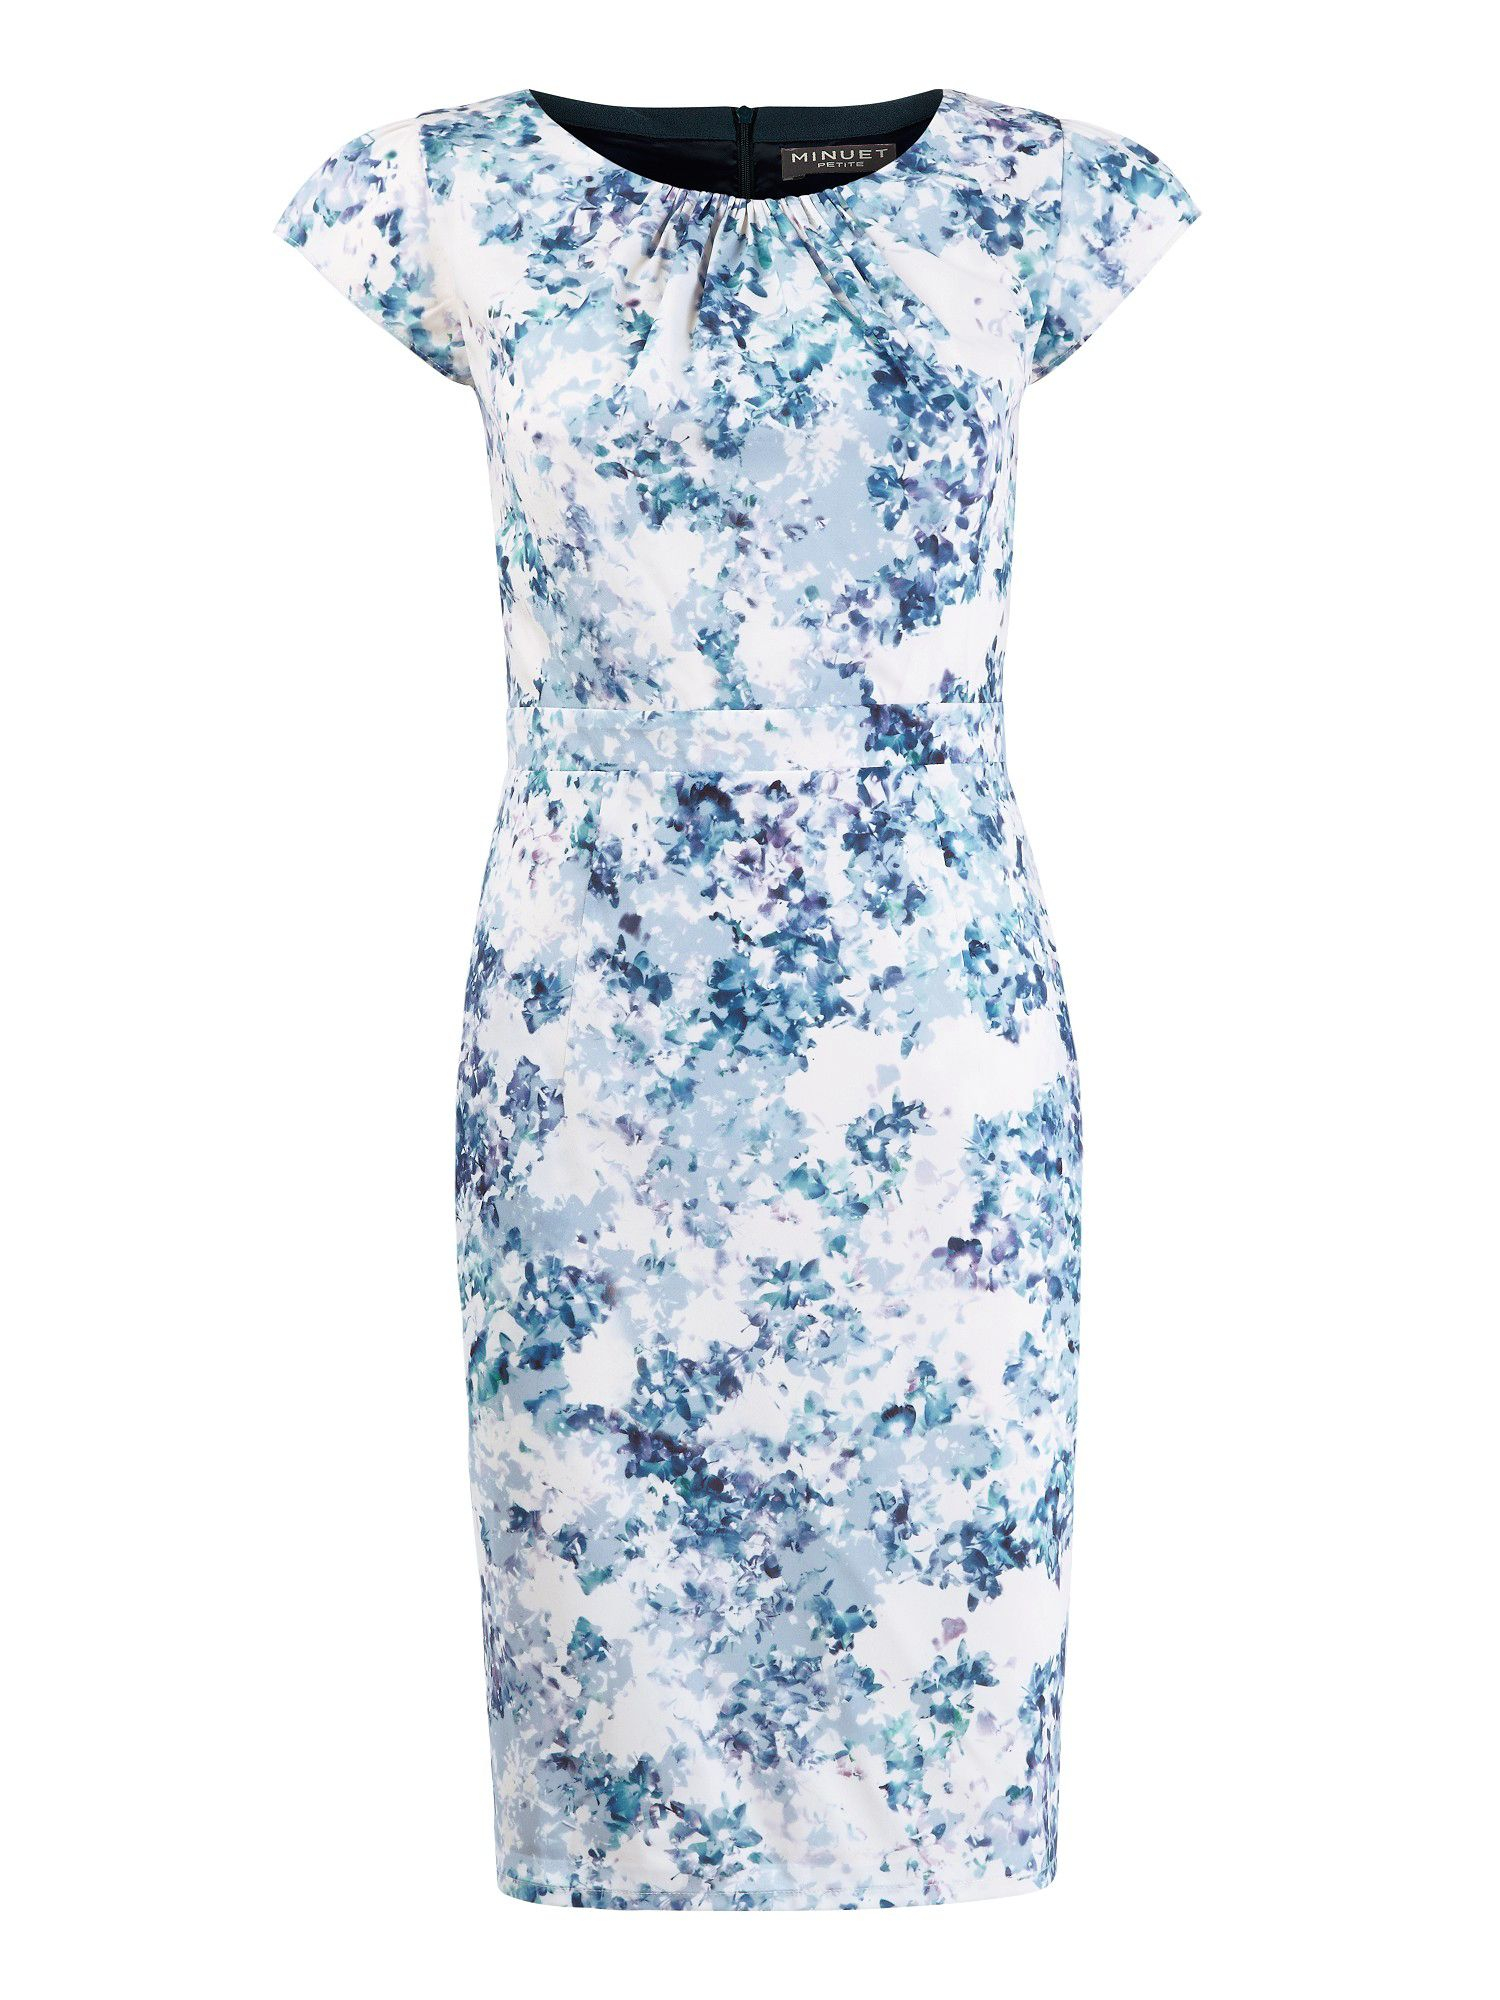 Lyst Minuet petite  Floral Garden Print Tea Dress  in Blue